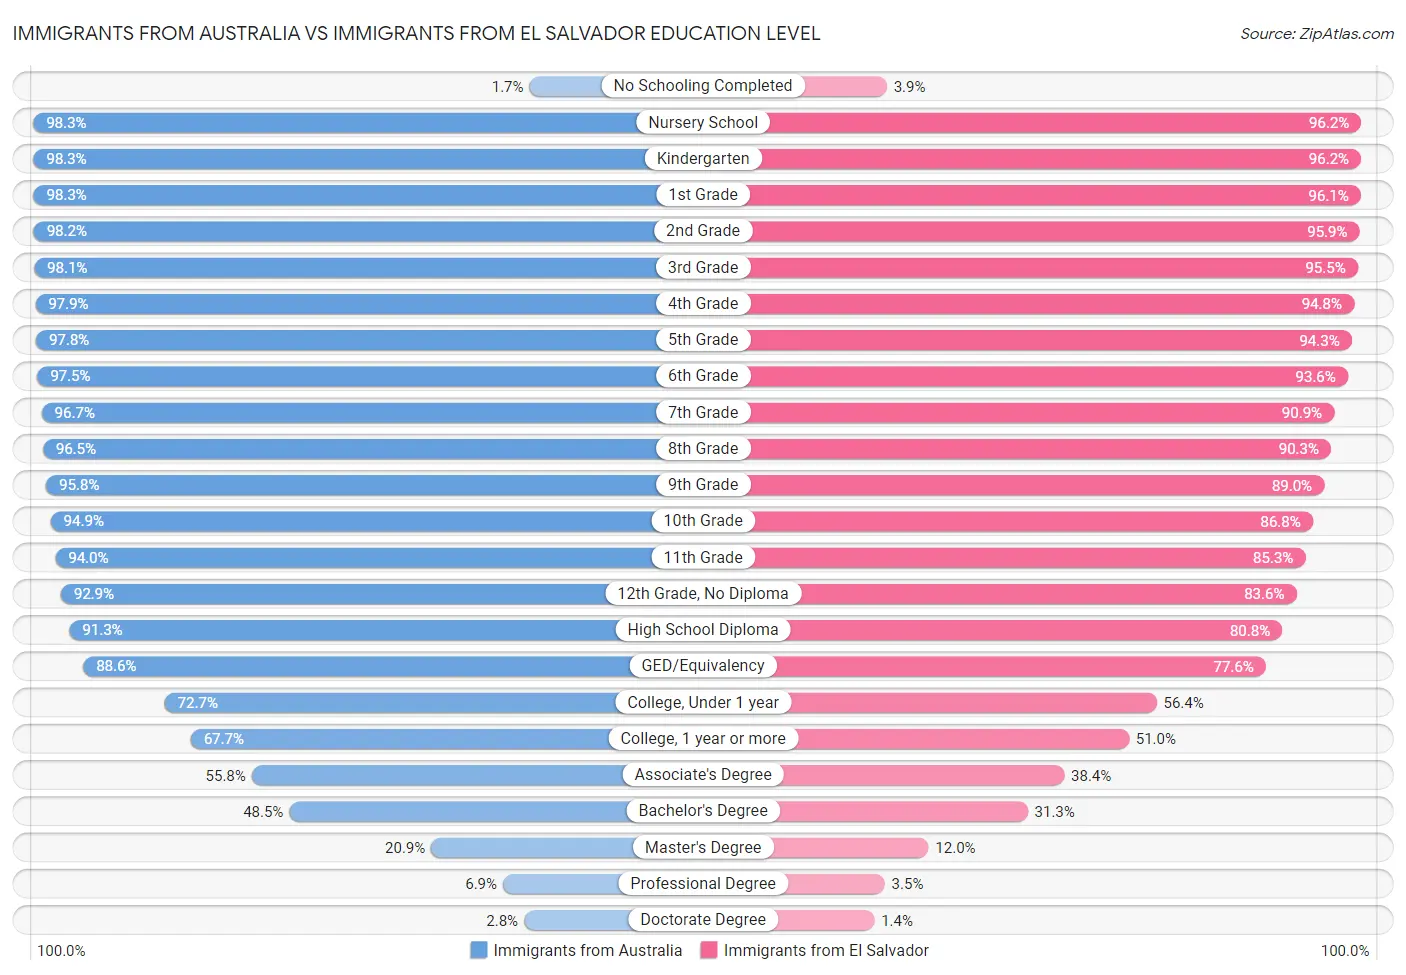 Immigrants from Australia vs Immigrants from El Salvador Education Level